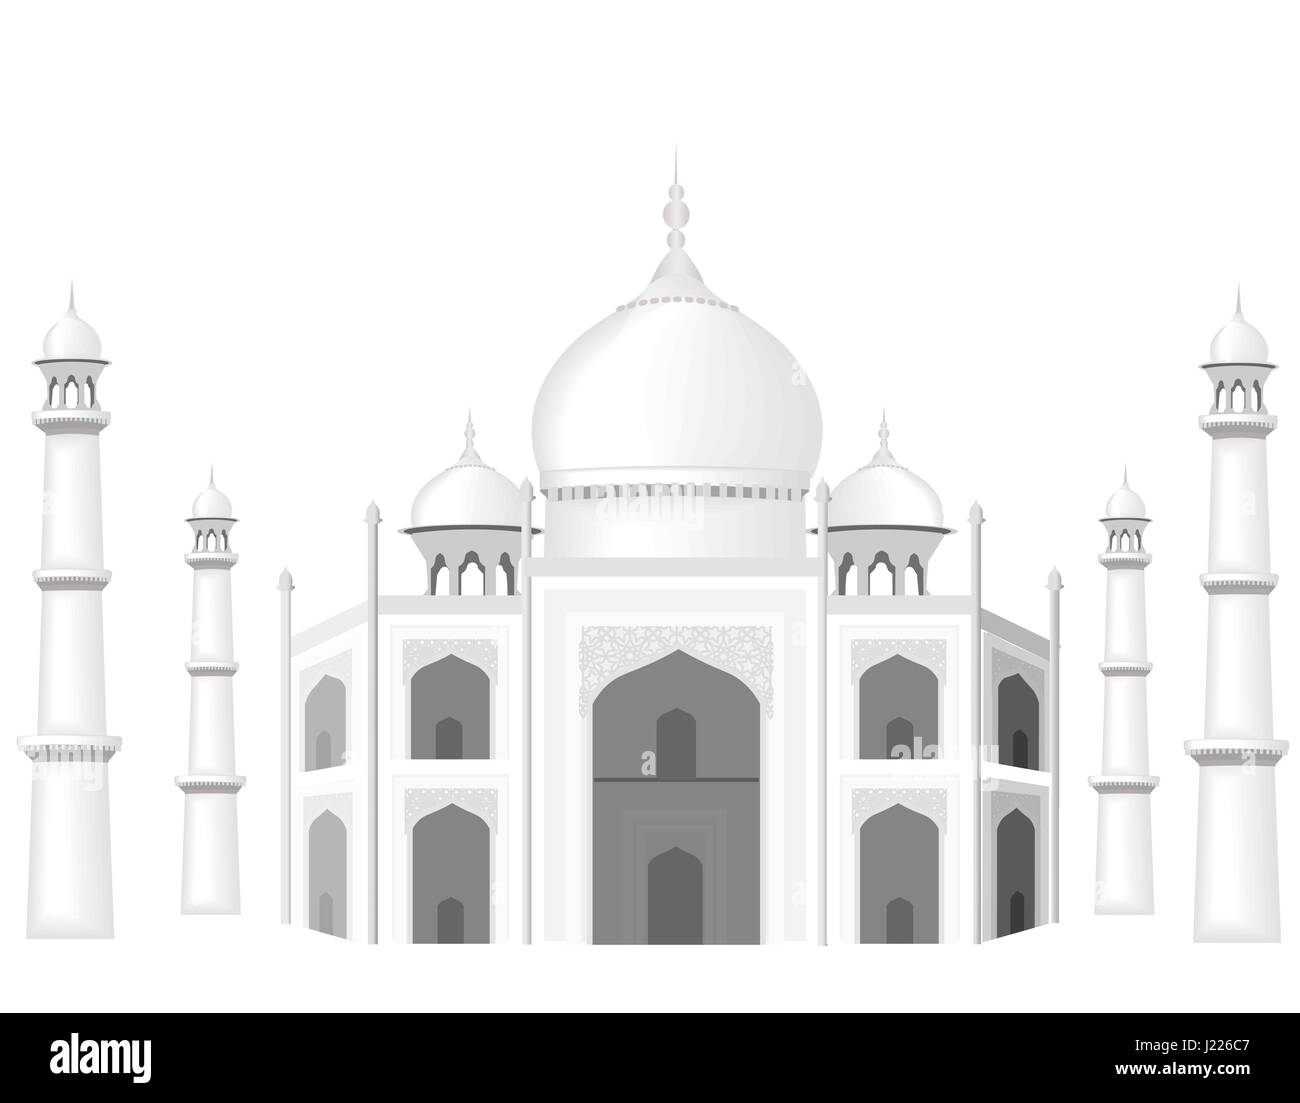 Le bâtiment est dans le style de l'hôtel Taj Mahal temple. Le Sultan s Palace. Graphiques en noir et blanc avec illustration des demi-teintes. Illustration de Vecteur